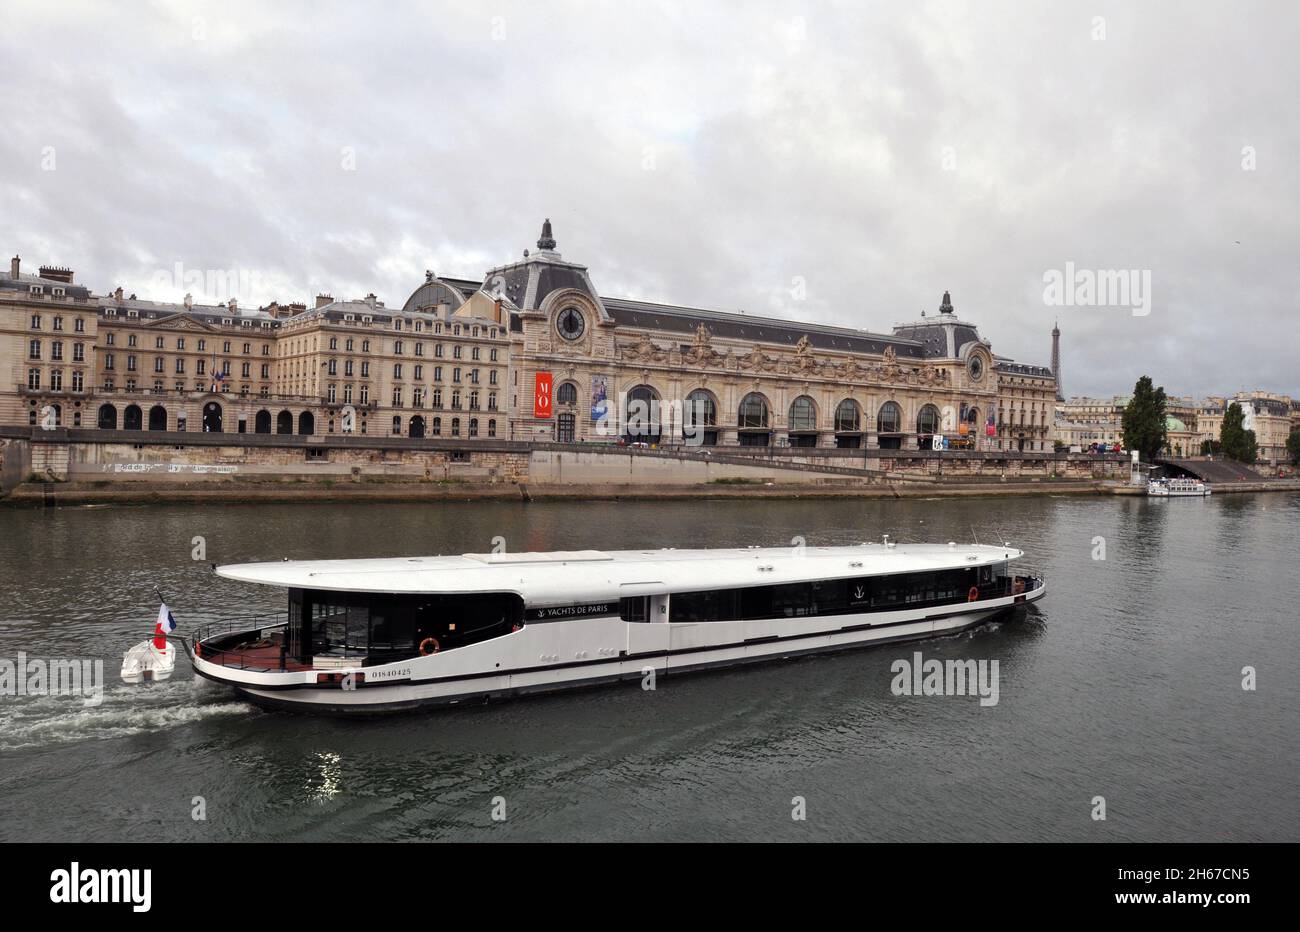 Ein Boot fährt entlang der seine in Paris am Wahrzeichen Musée d'Orsay vorbei, einem Kunstmuseum im historischen ehemaligen Bahnhof Gare d'Orsay. Stockfoto